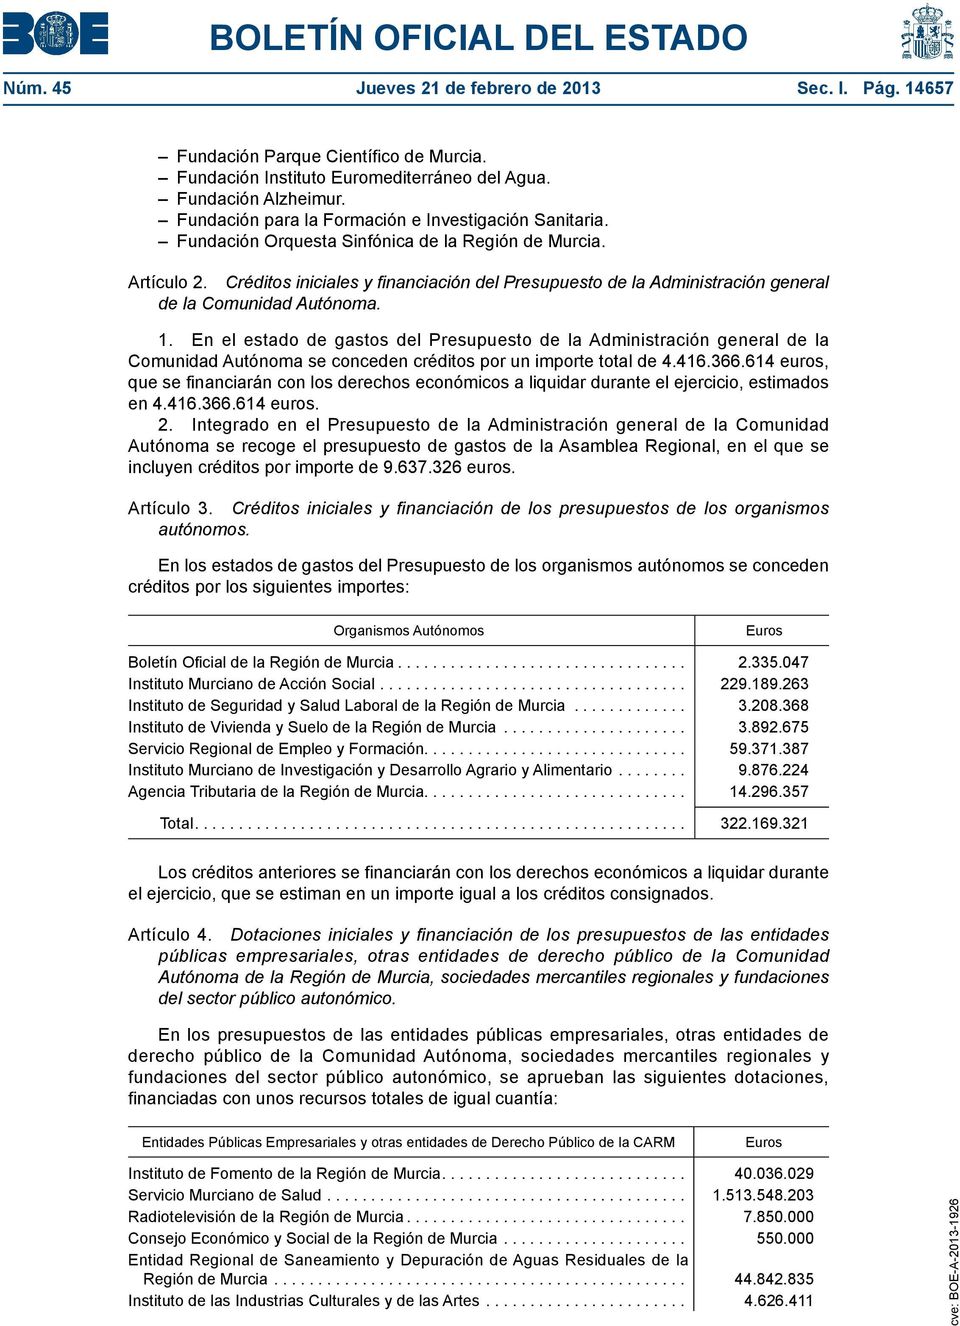 Créditos iniciales y financiación del Presupuesto de la Administración general de la Comunidad Autónoma. 1.